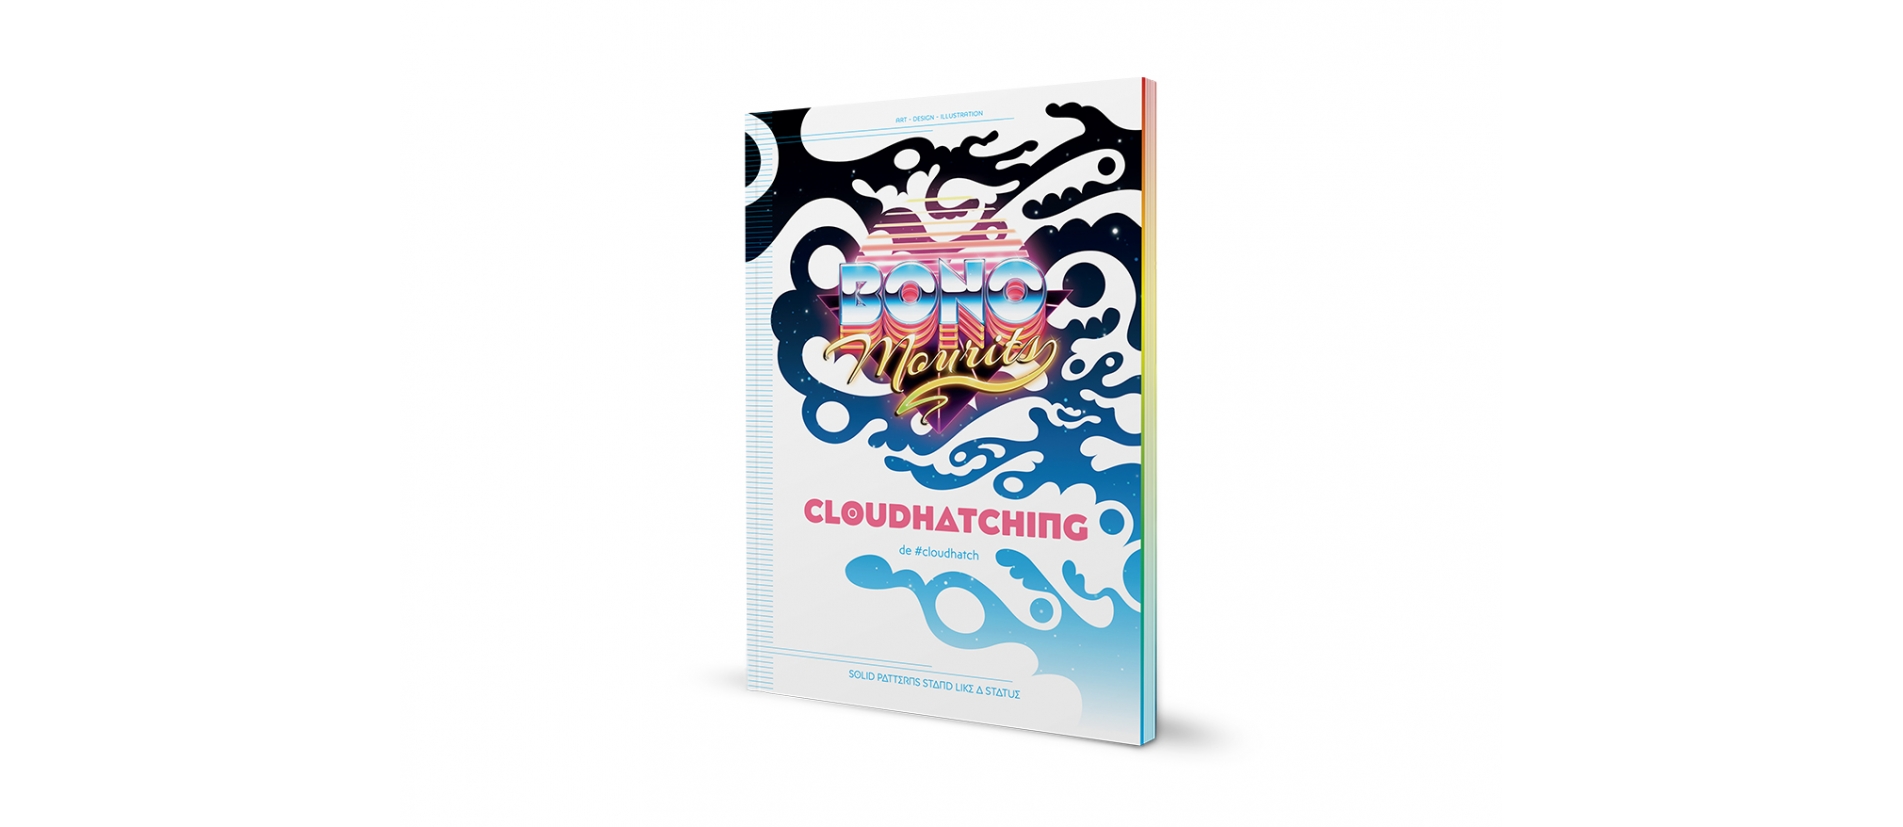 Cloudhatching - the #cloudhatch